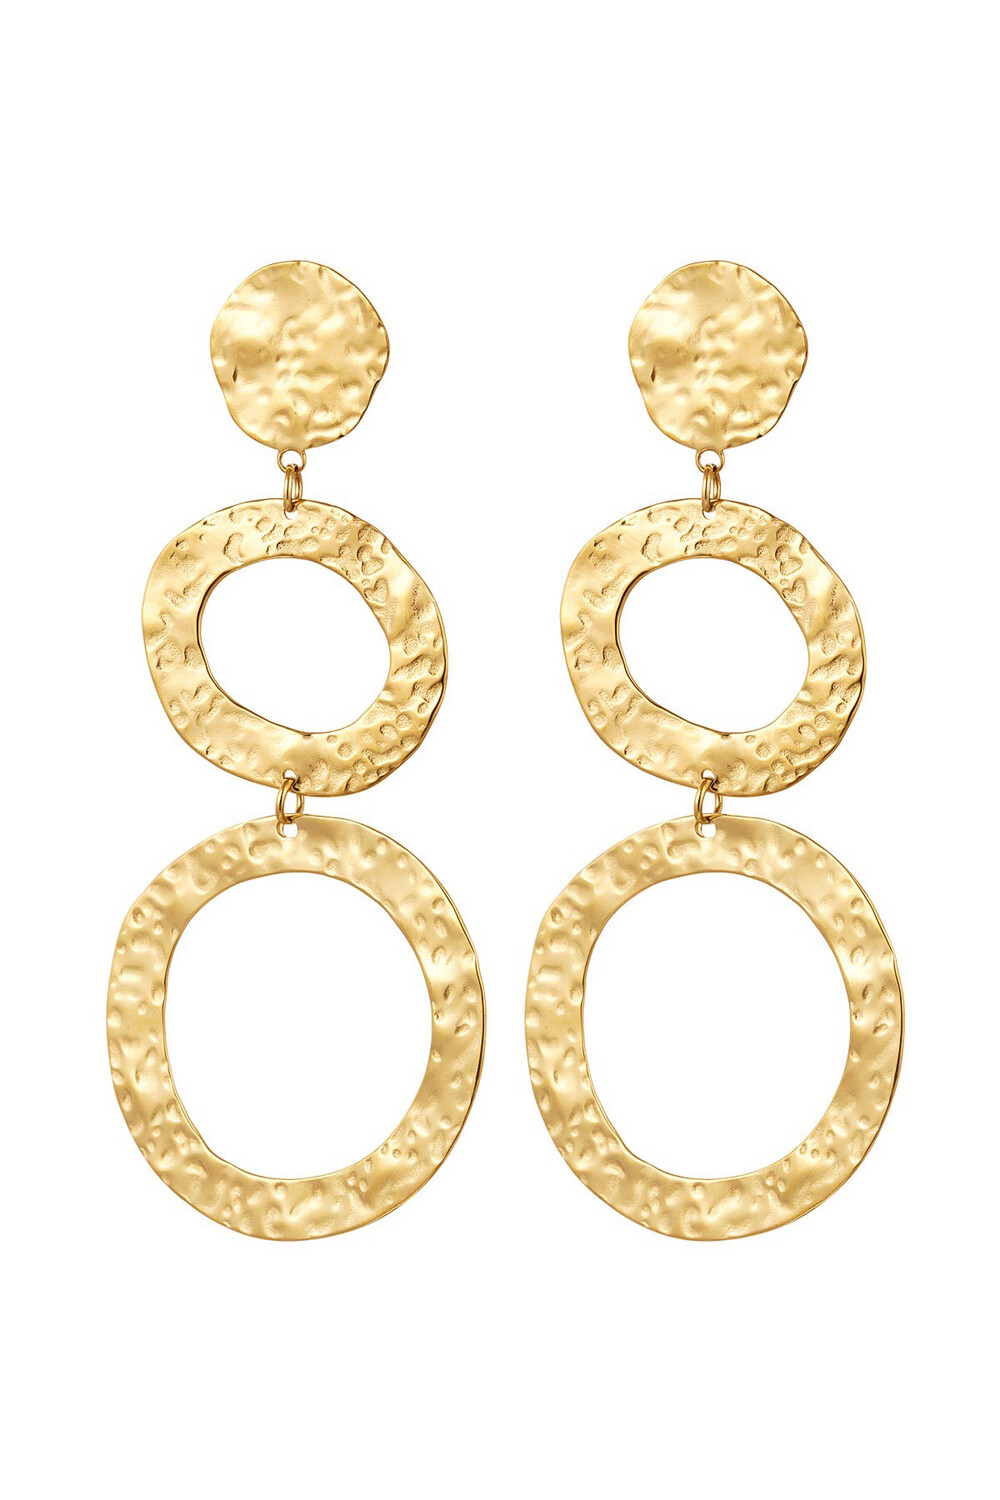 Las Lunas Earrings Juul - Gold